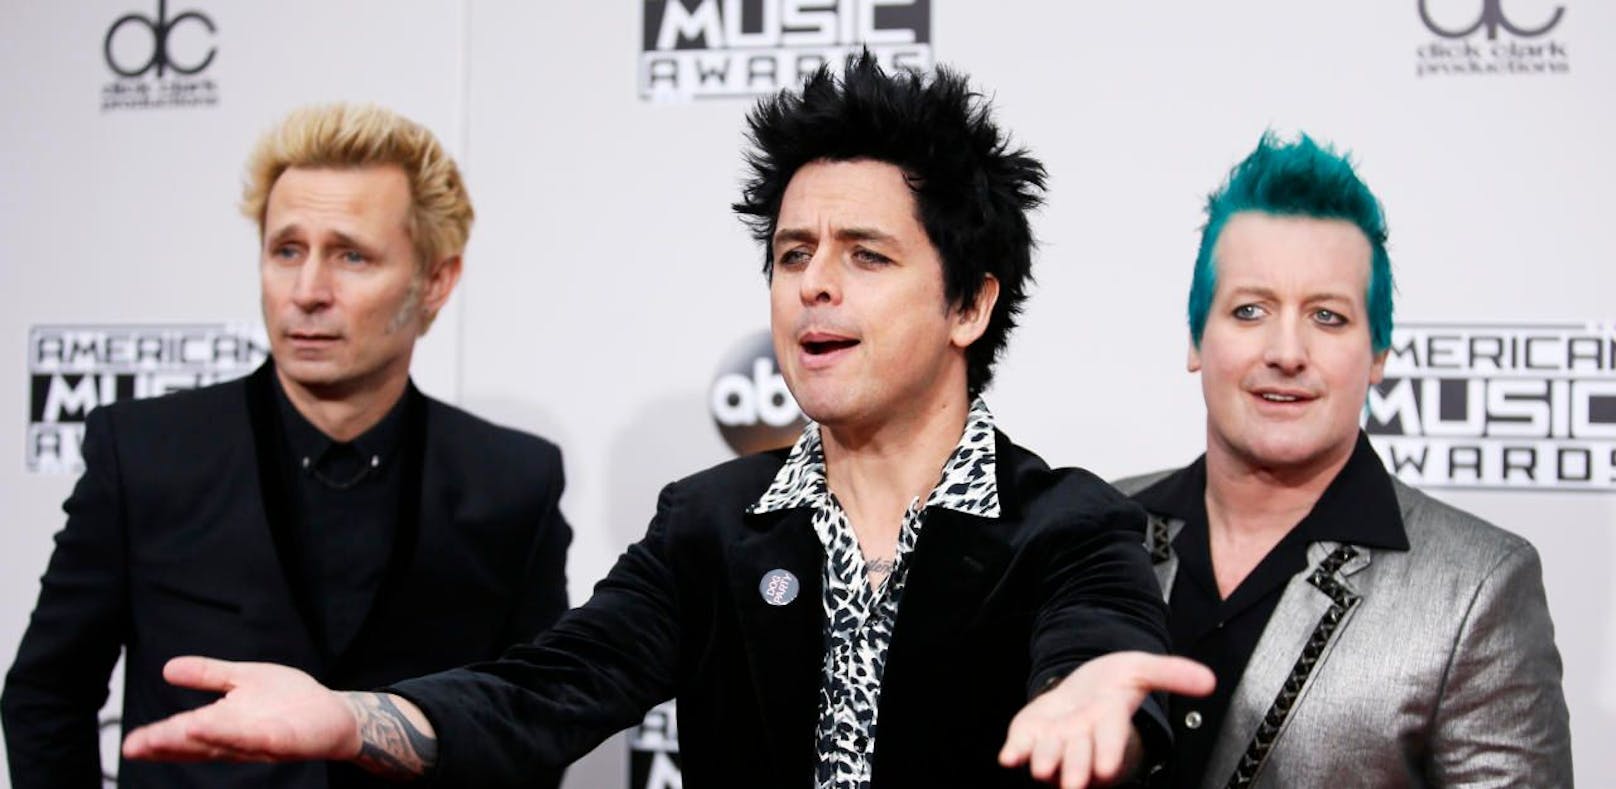 Green Day durften am 4. Juli nicht in Glasgow spielen